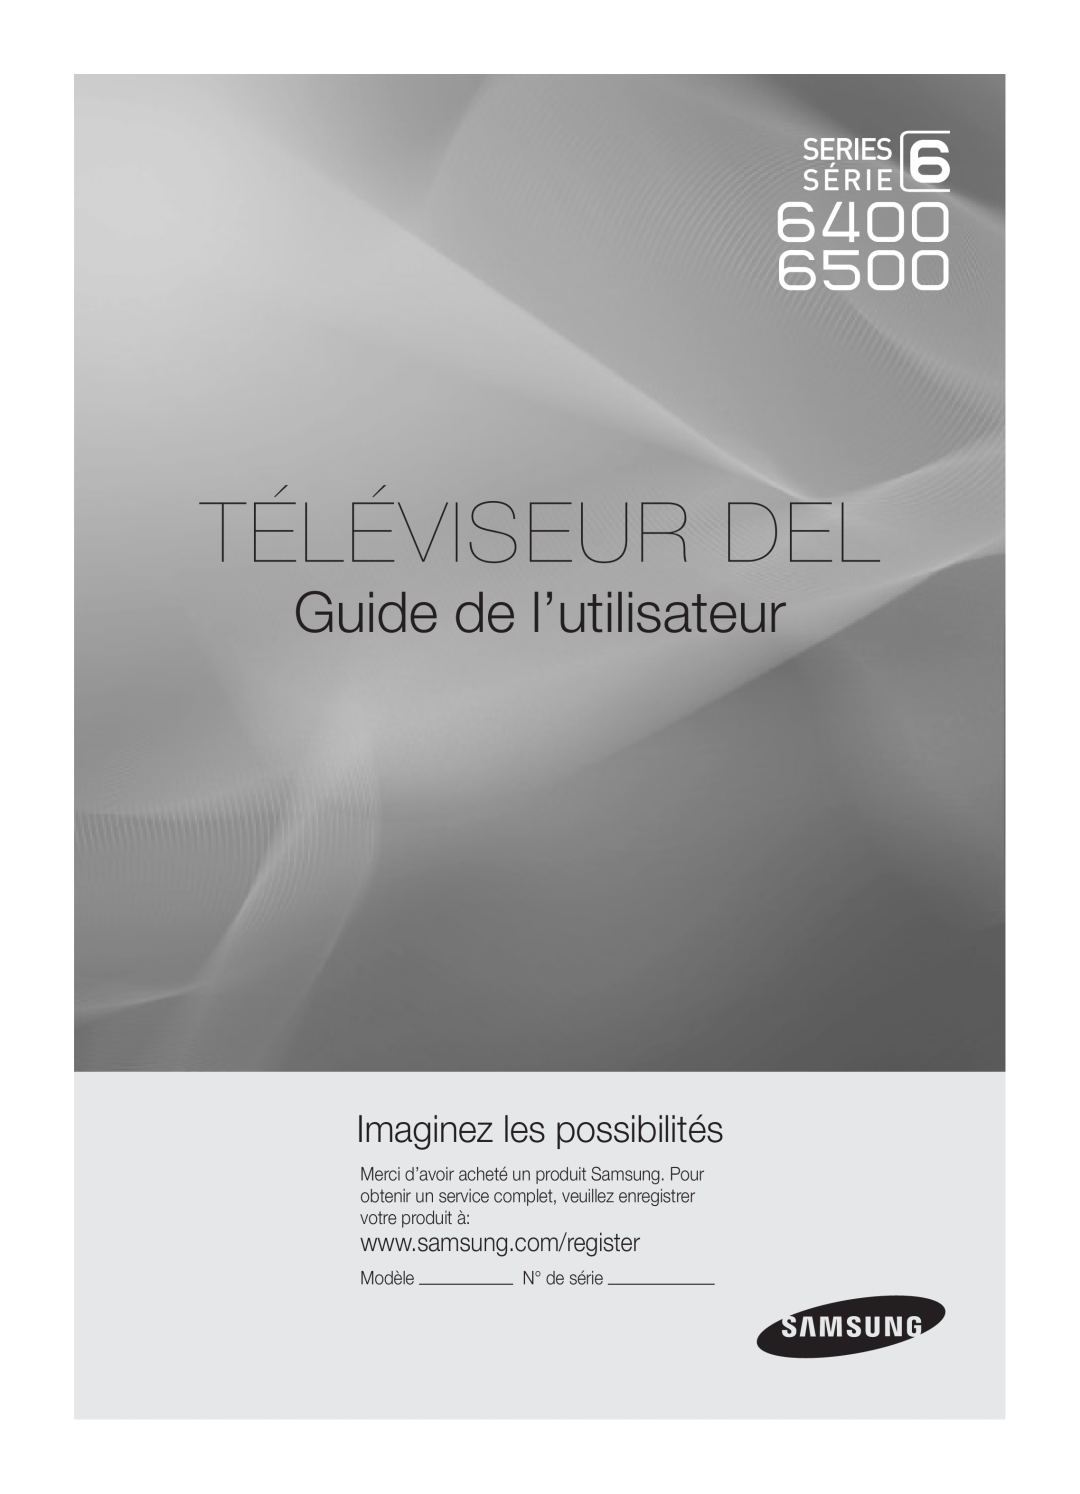 Samsung UC6500-ZC, BN68-02711B-04 user manual Téléviseur Del, Guide de l’utilisateur, Imaginez les possibilités, Modèle 